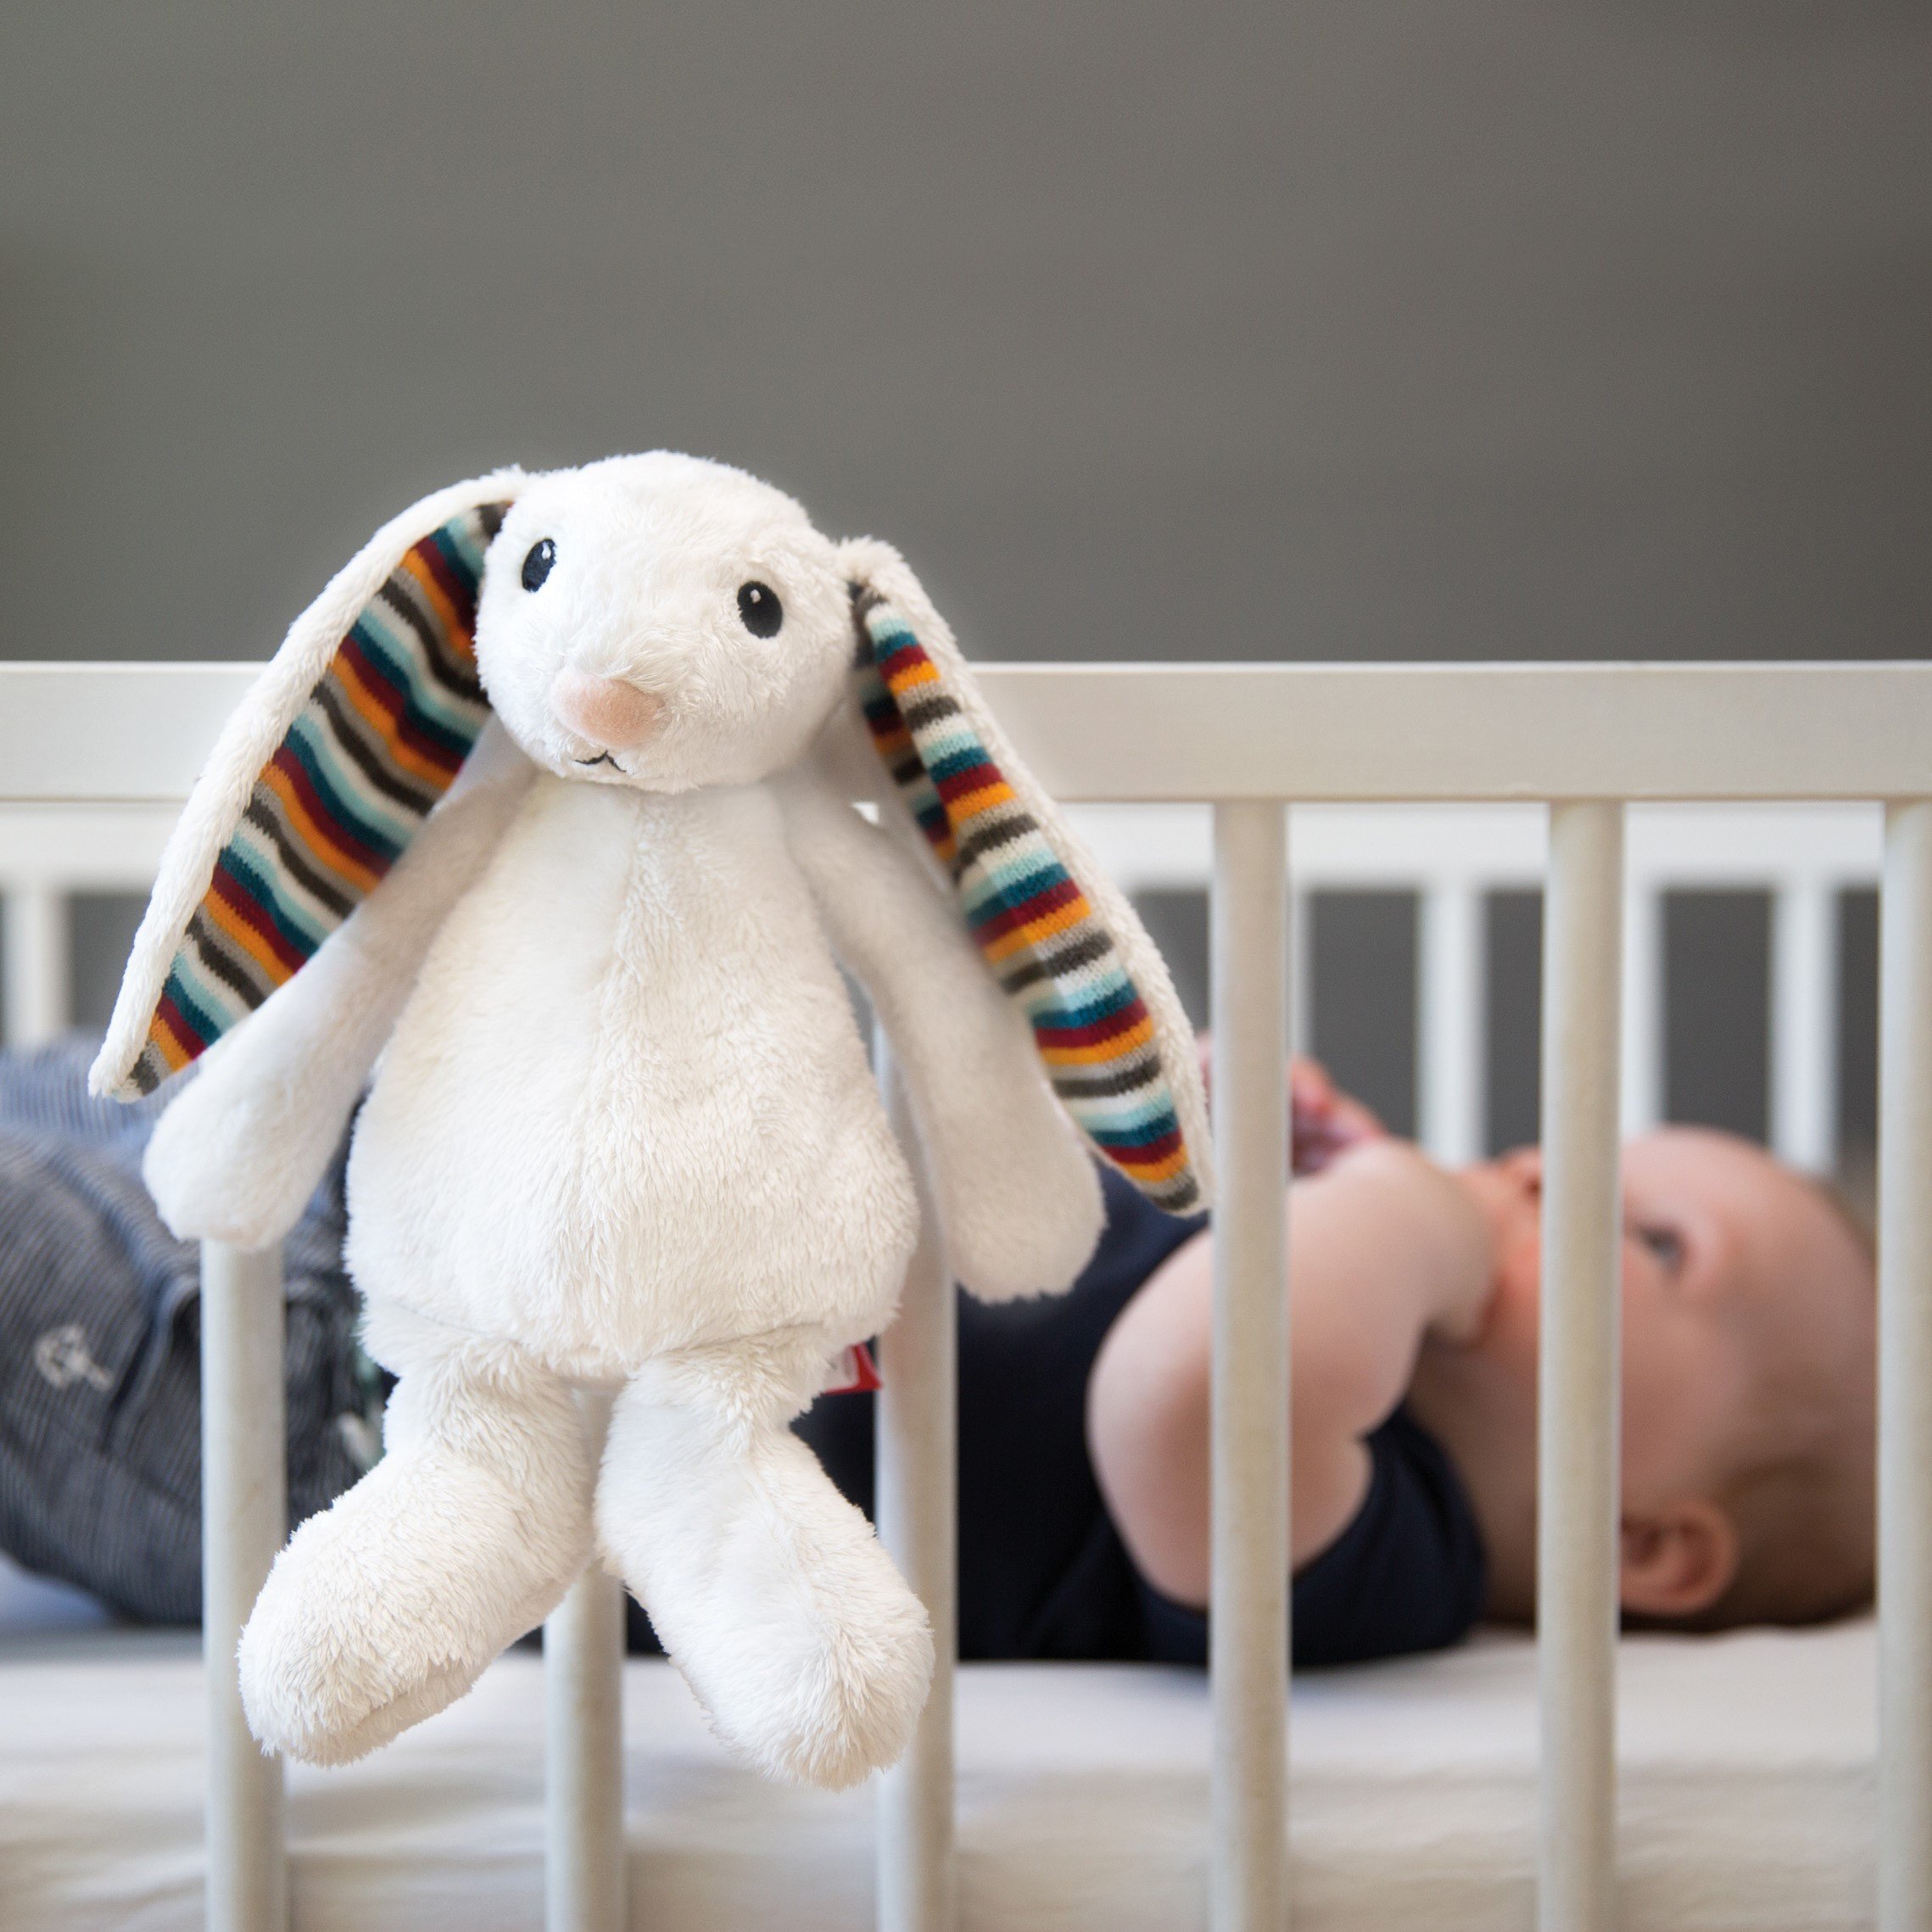 М'яка іграшка для новонародженого Zazu Bibi Кролик, 19 см (ZA-BIBI-01) - фото 4